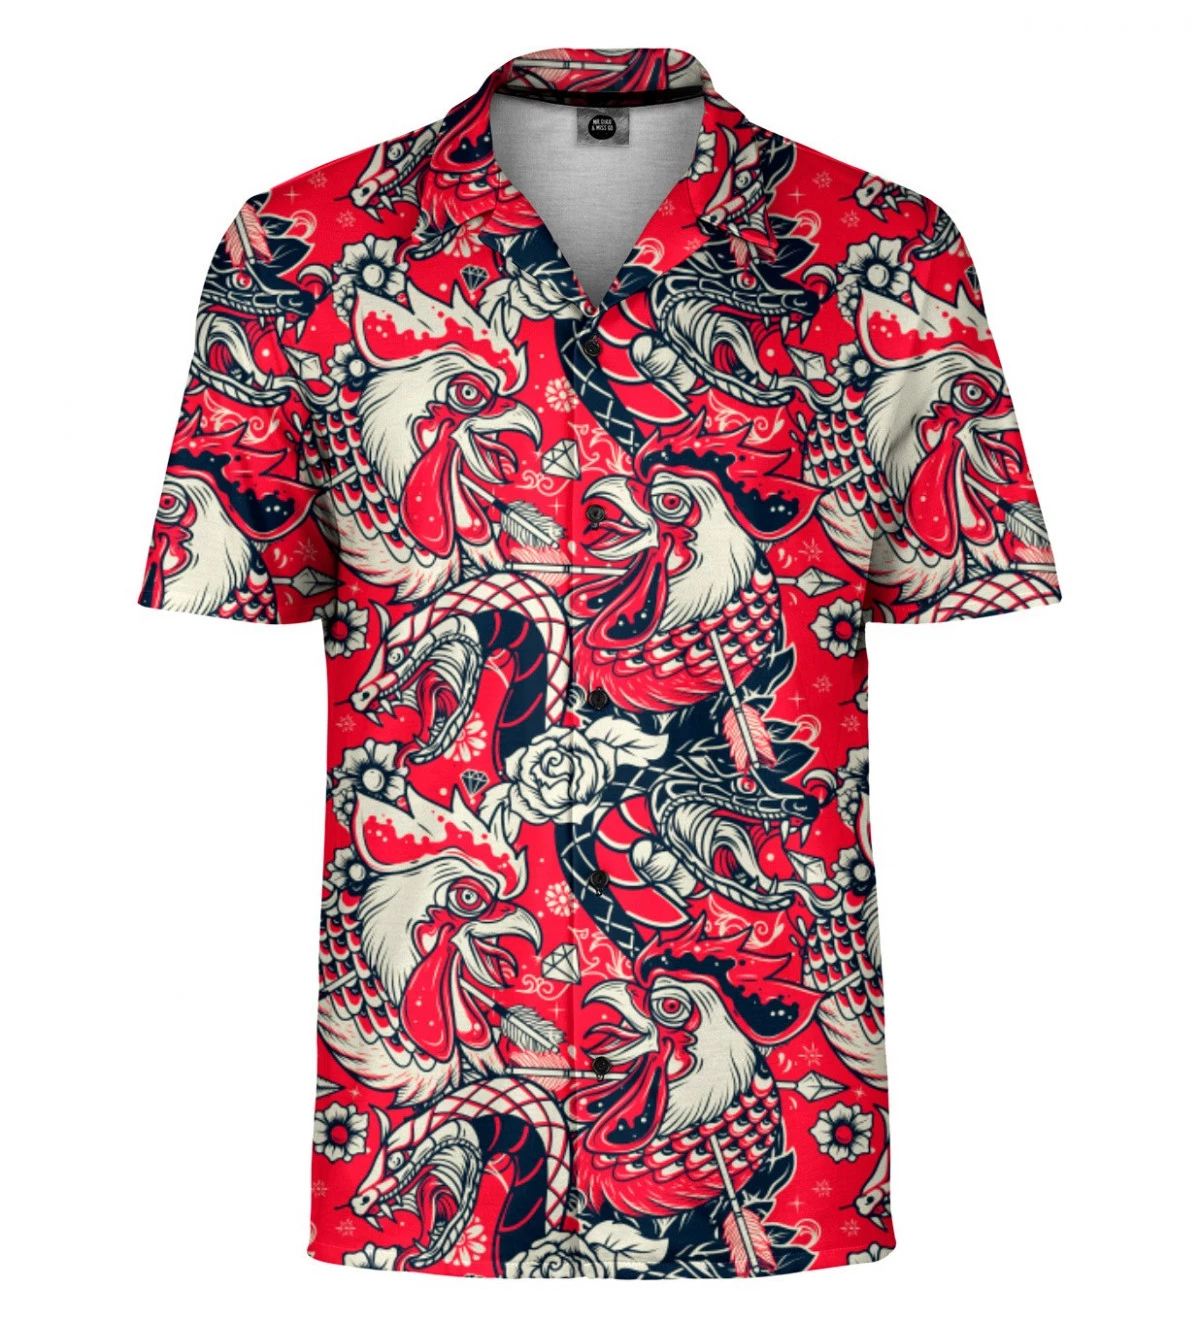 Florida Atlantic Owls Ncaa Grunge Polynesian Tattoo Summer Gift For Fans Hawaiian  Shirt  Shibtee Clothing